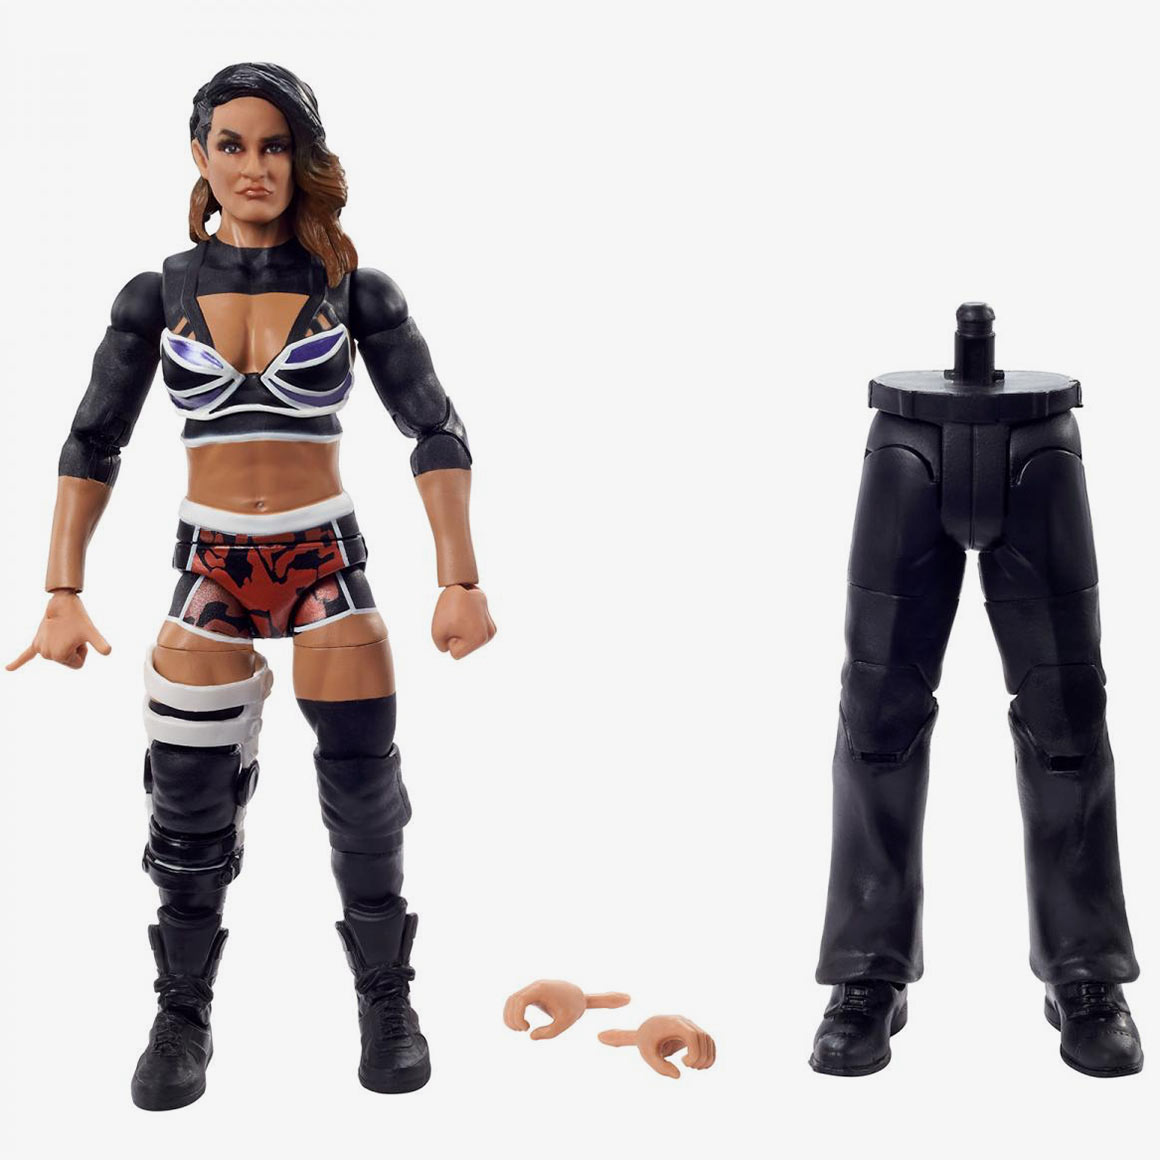 Dakota Kai WWE Royal Rumble 2022 Elite Collection